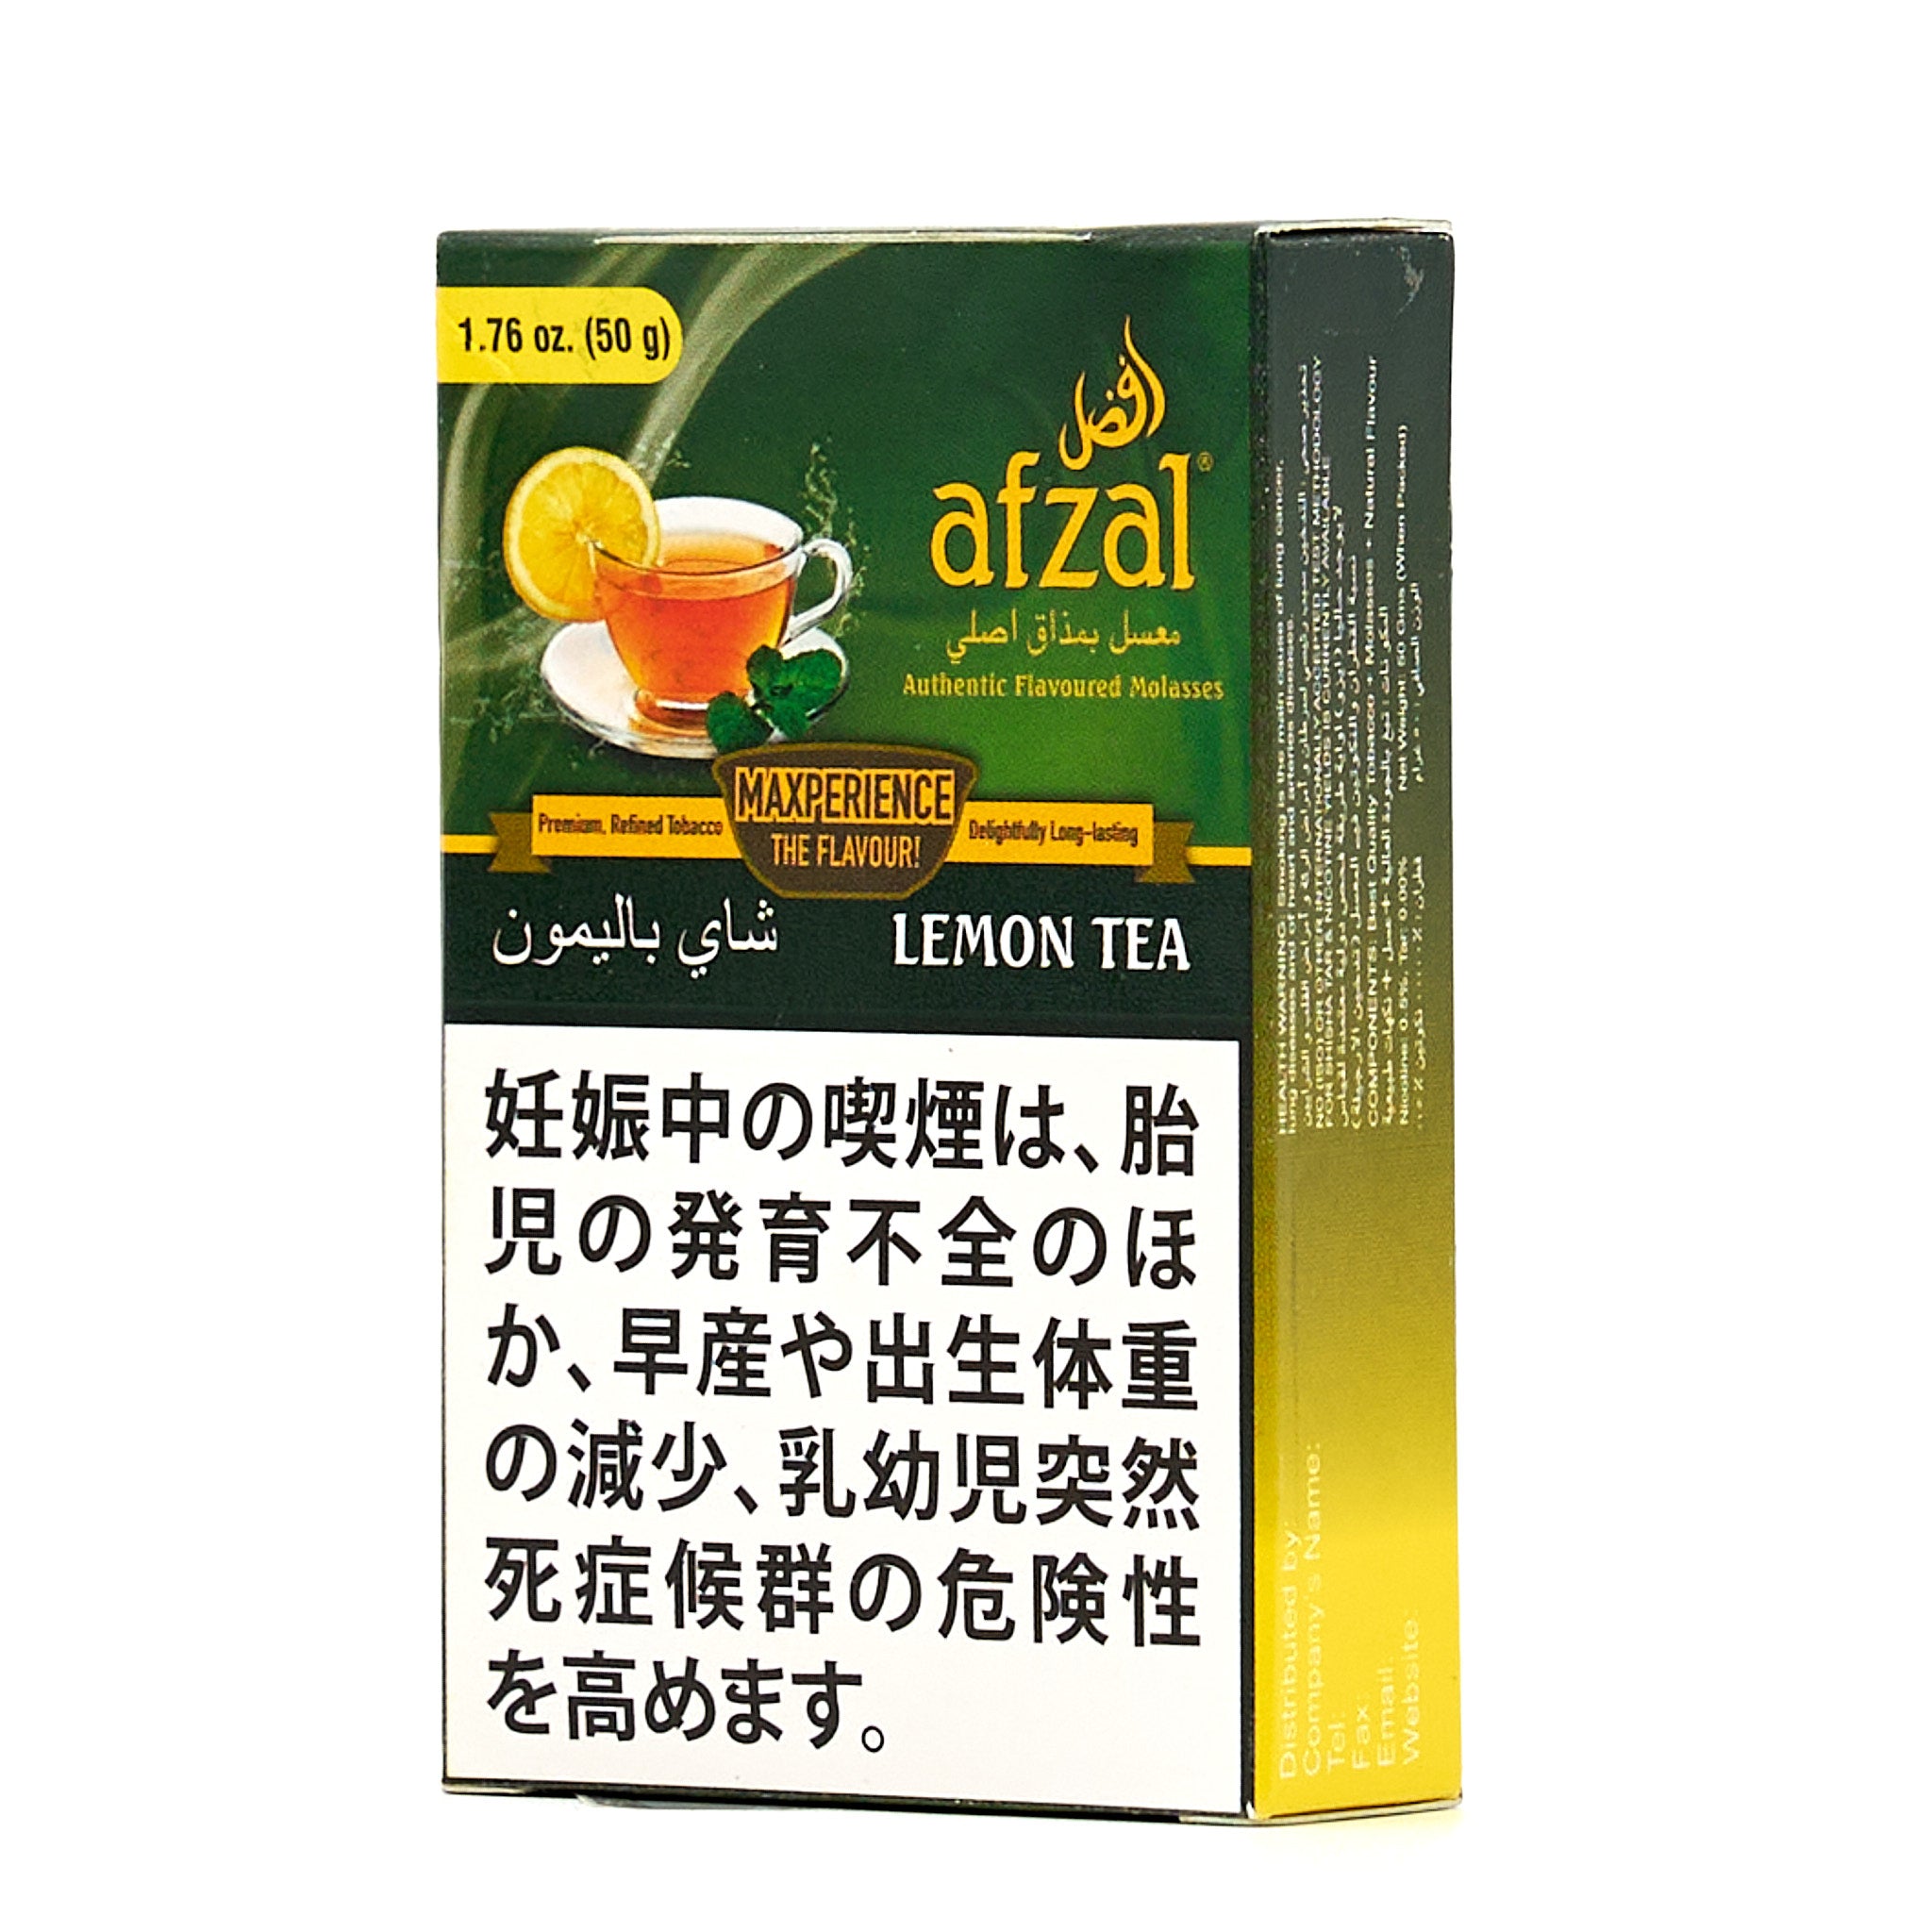 Lemon Tea / レモンティー (50g)